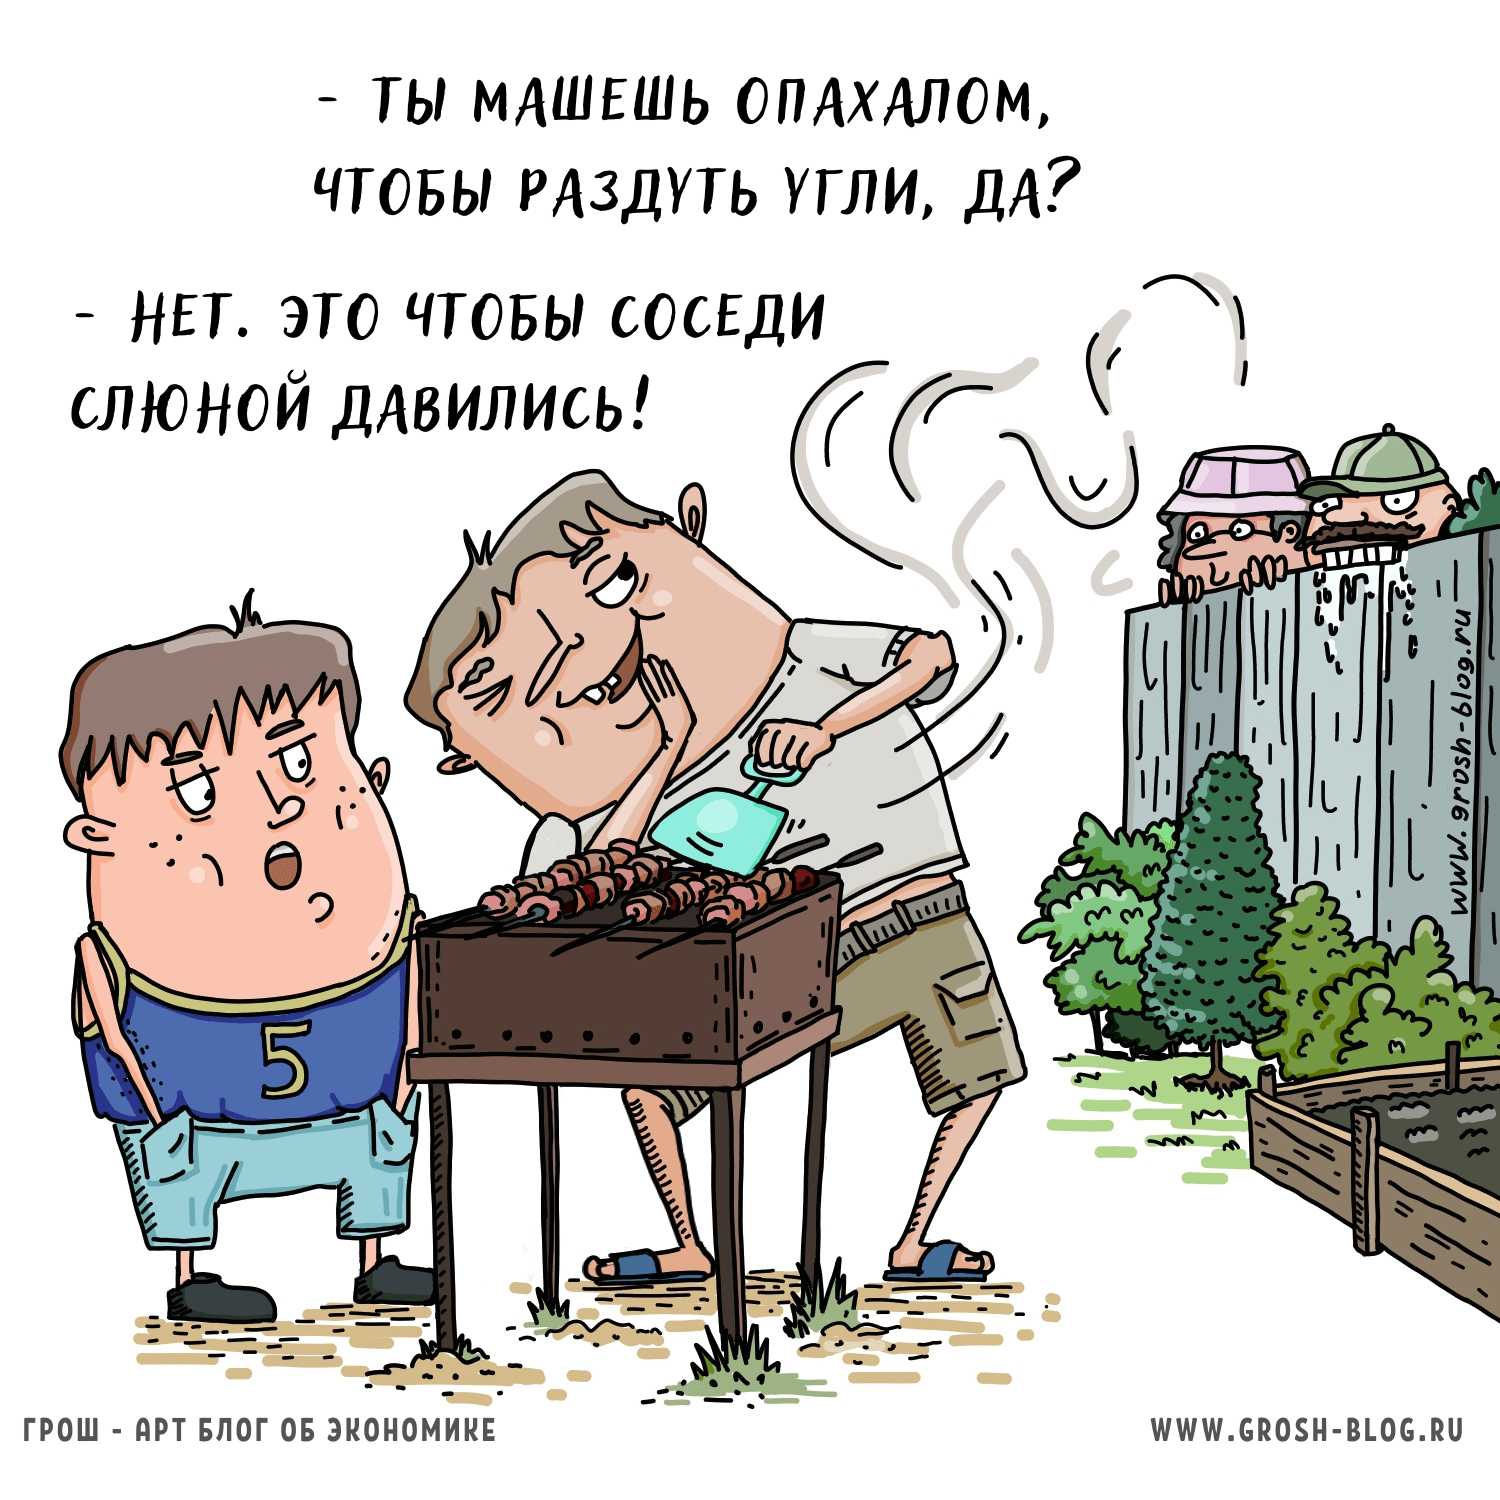 Карикатура про шашлыки мангал дачу и соседей